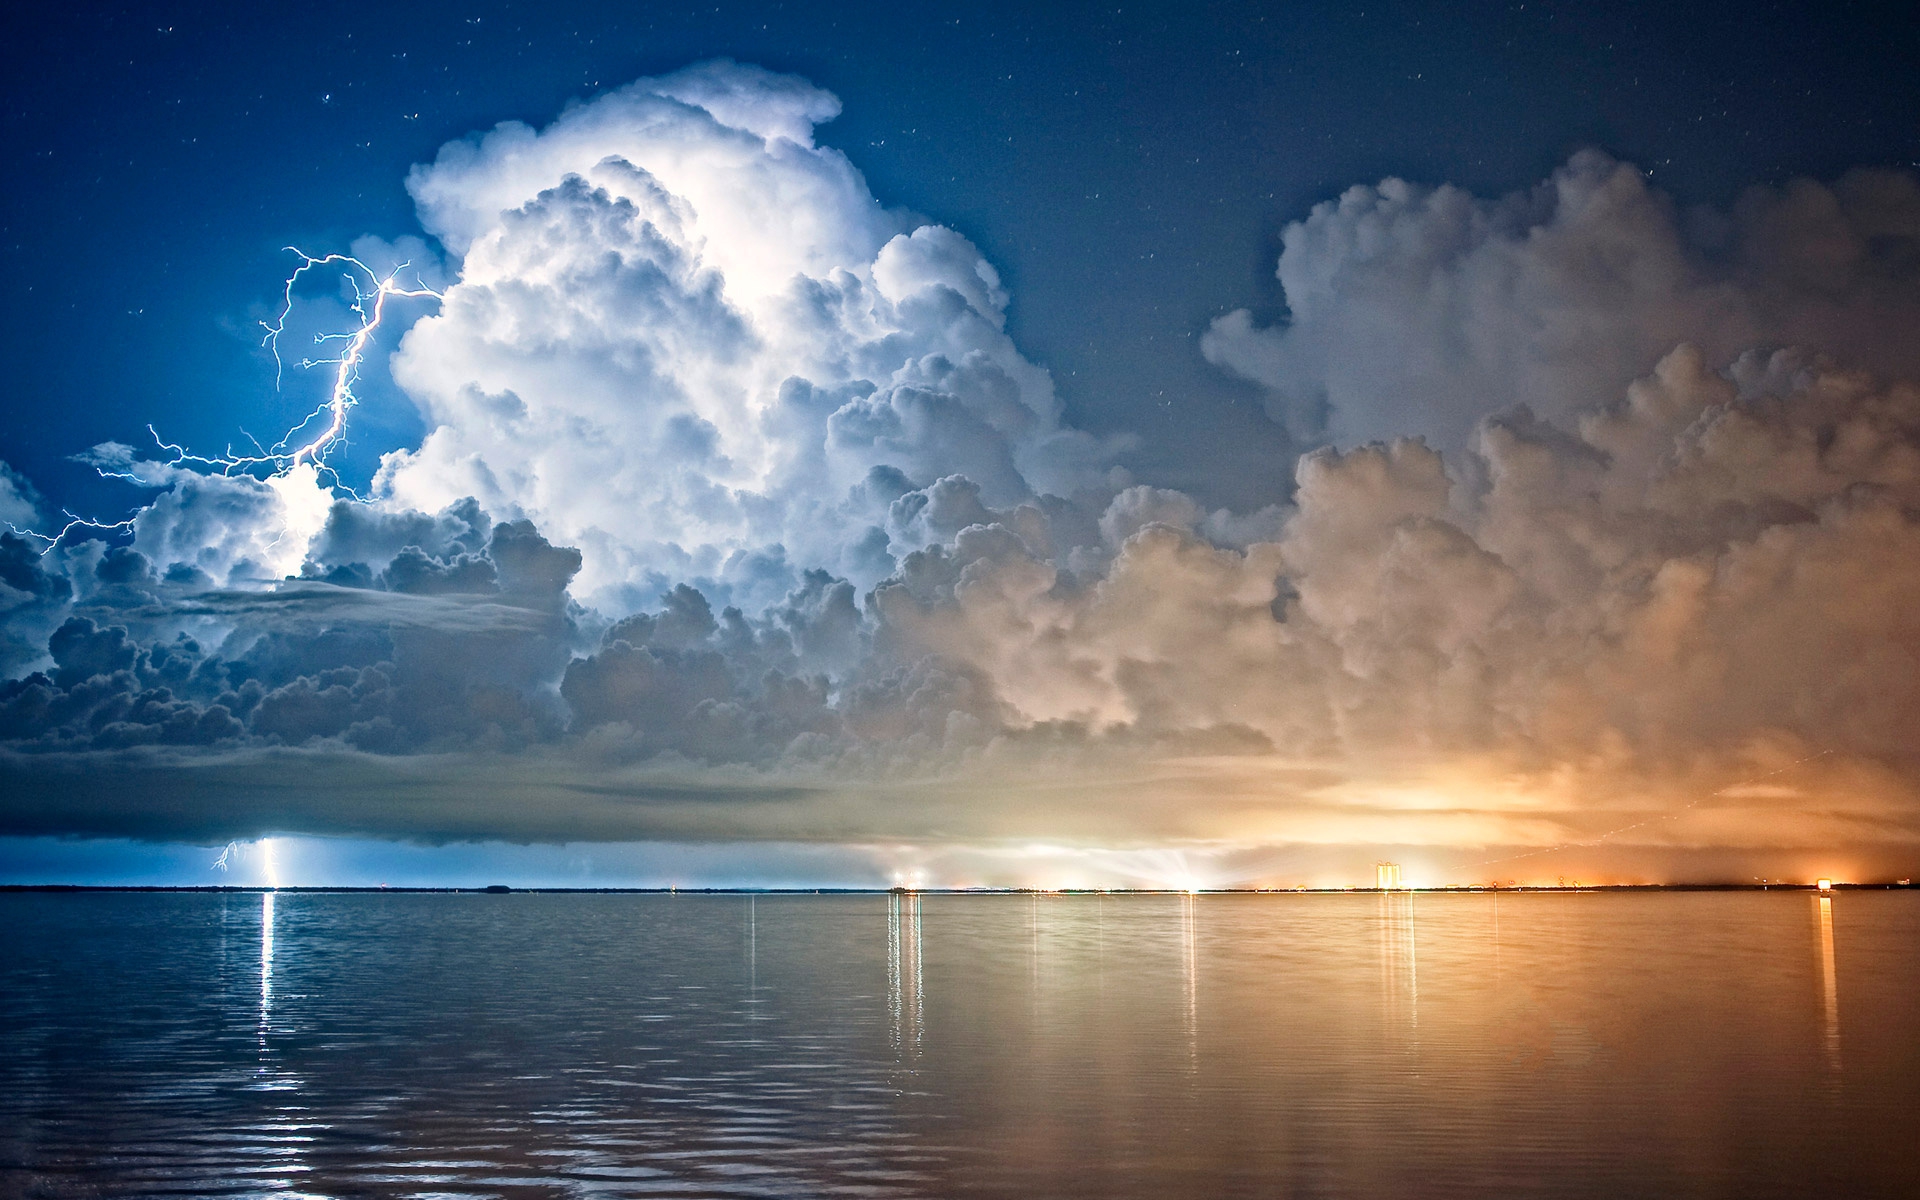 Скачать обои бесплатно Буря, Земля/природа картинка на рабочий стол ПК